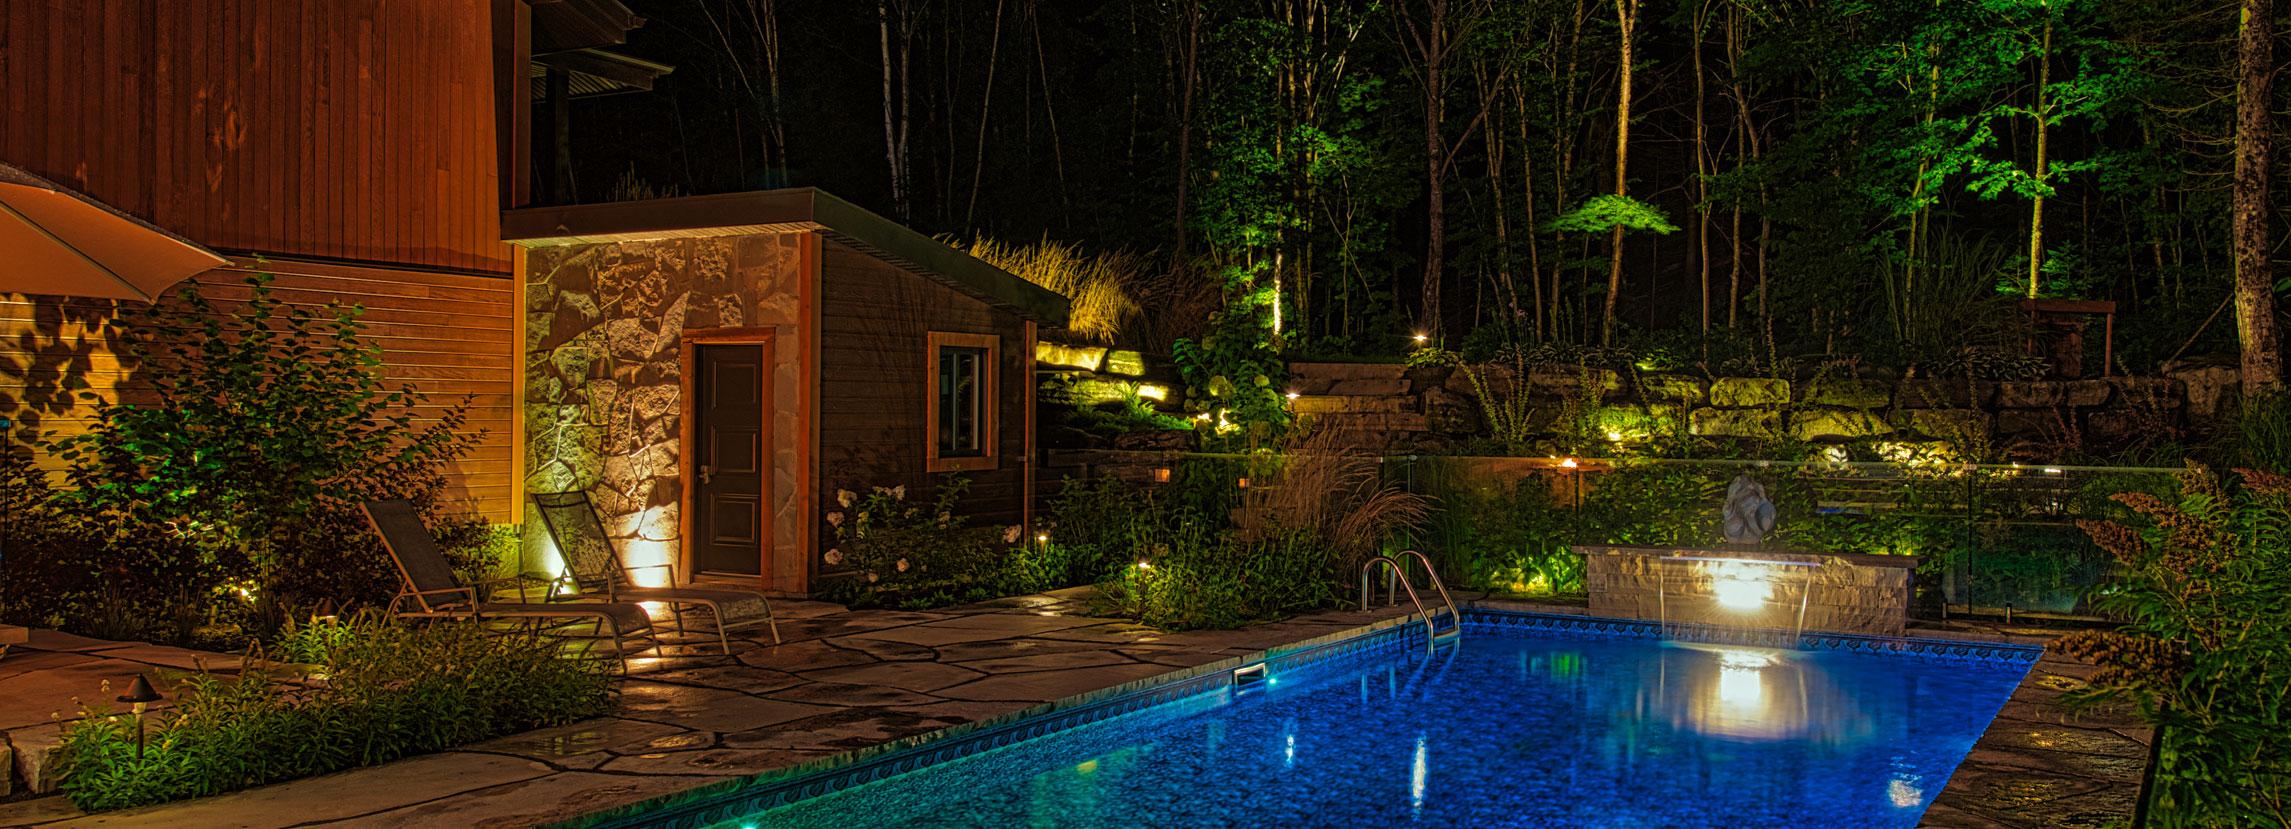 piscine éclairée le soir - éclairage paysager 